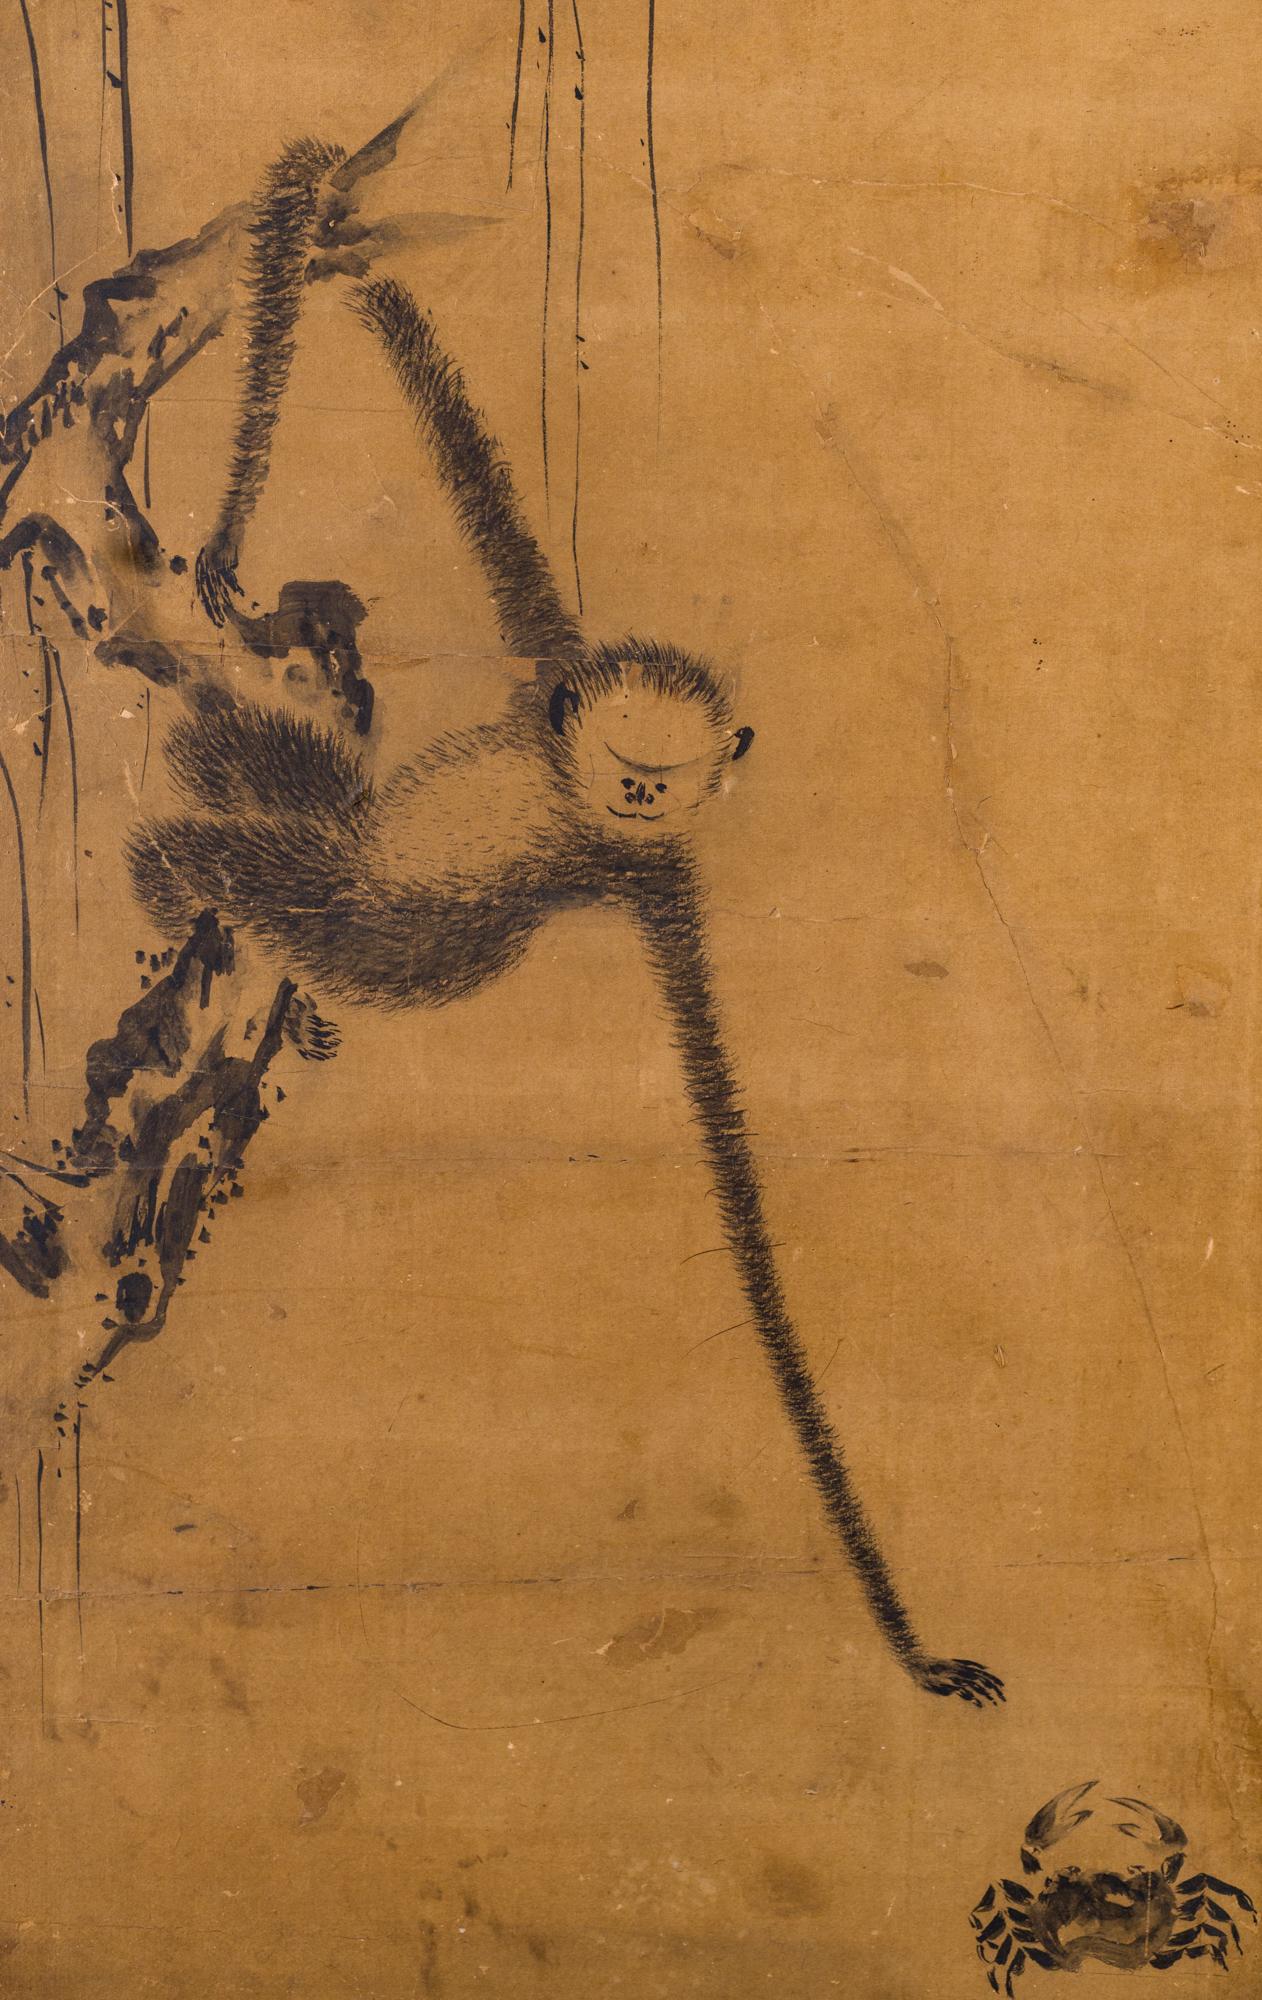 Japanischer Zwei-Panel-Bildschirm: Gibbons der Folklore, Edo-Periode (17. Jahrhundert) Gemälde der Kano-Schule mit Gibbons in japanischen Fabeln. Die linke Tafel stellt eine japanische Fabel von einem Affen und einer Krabbe dar, die vor den Gefahren